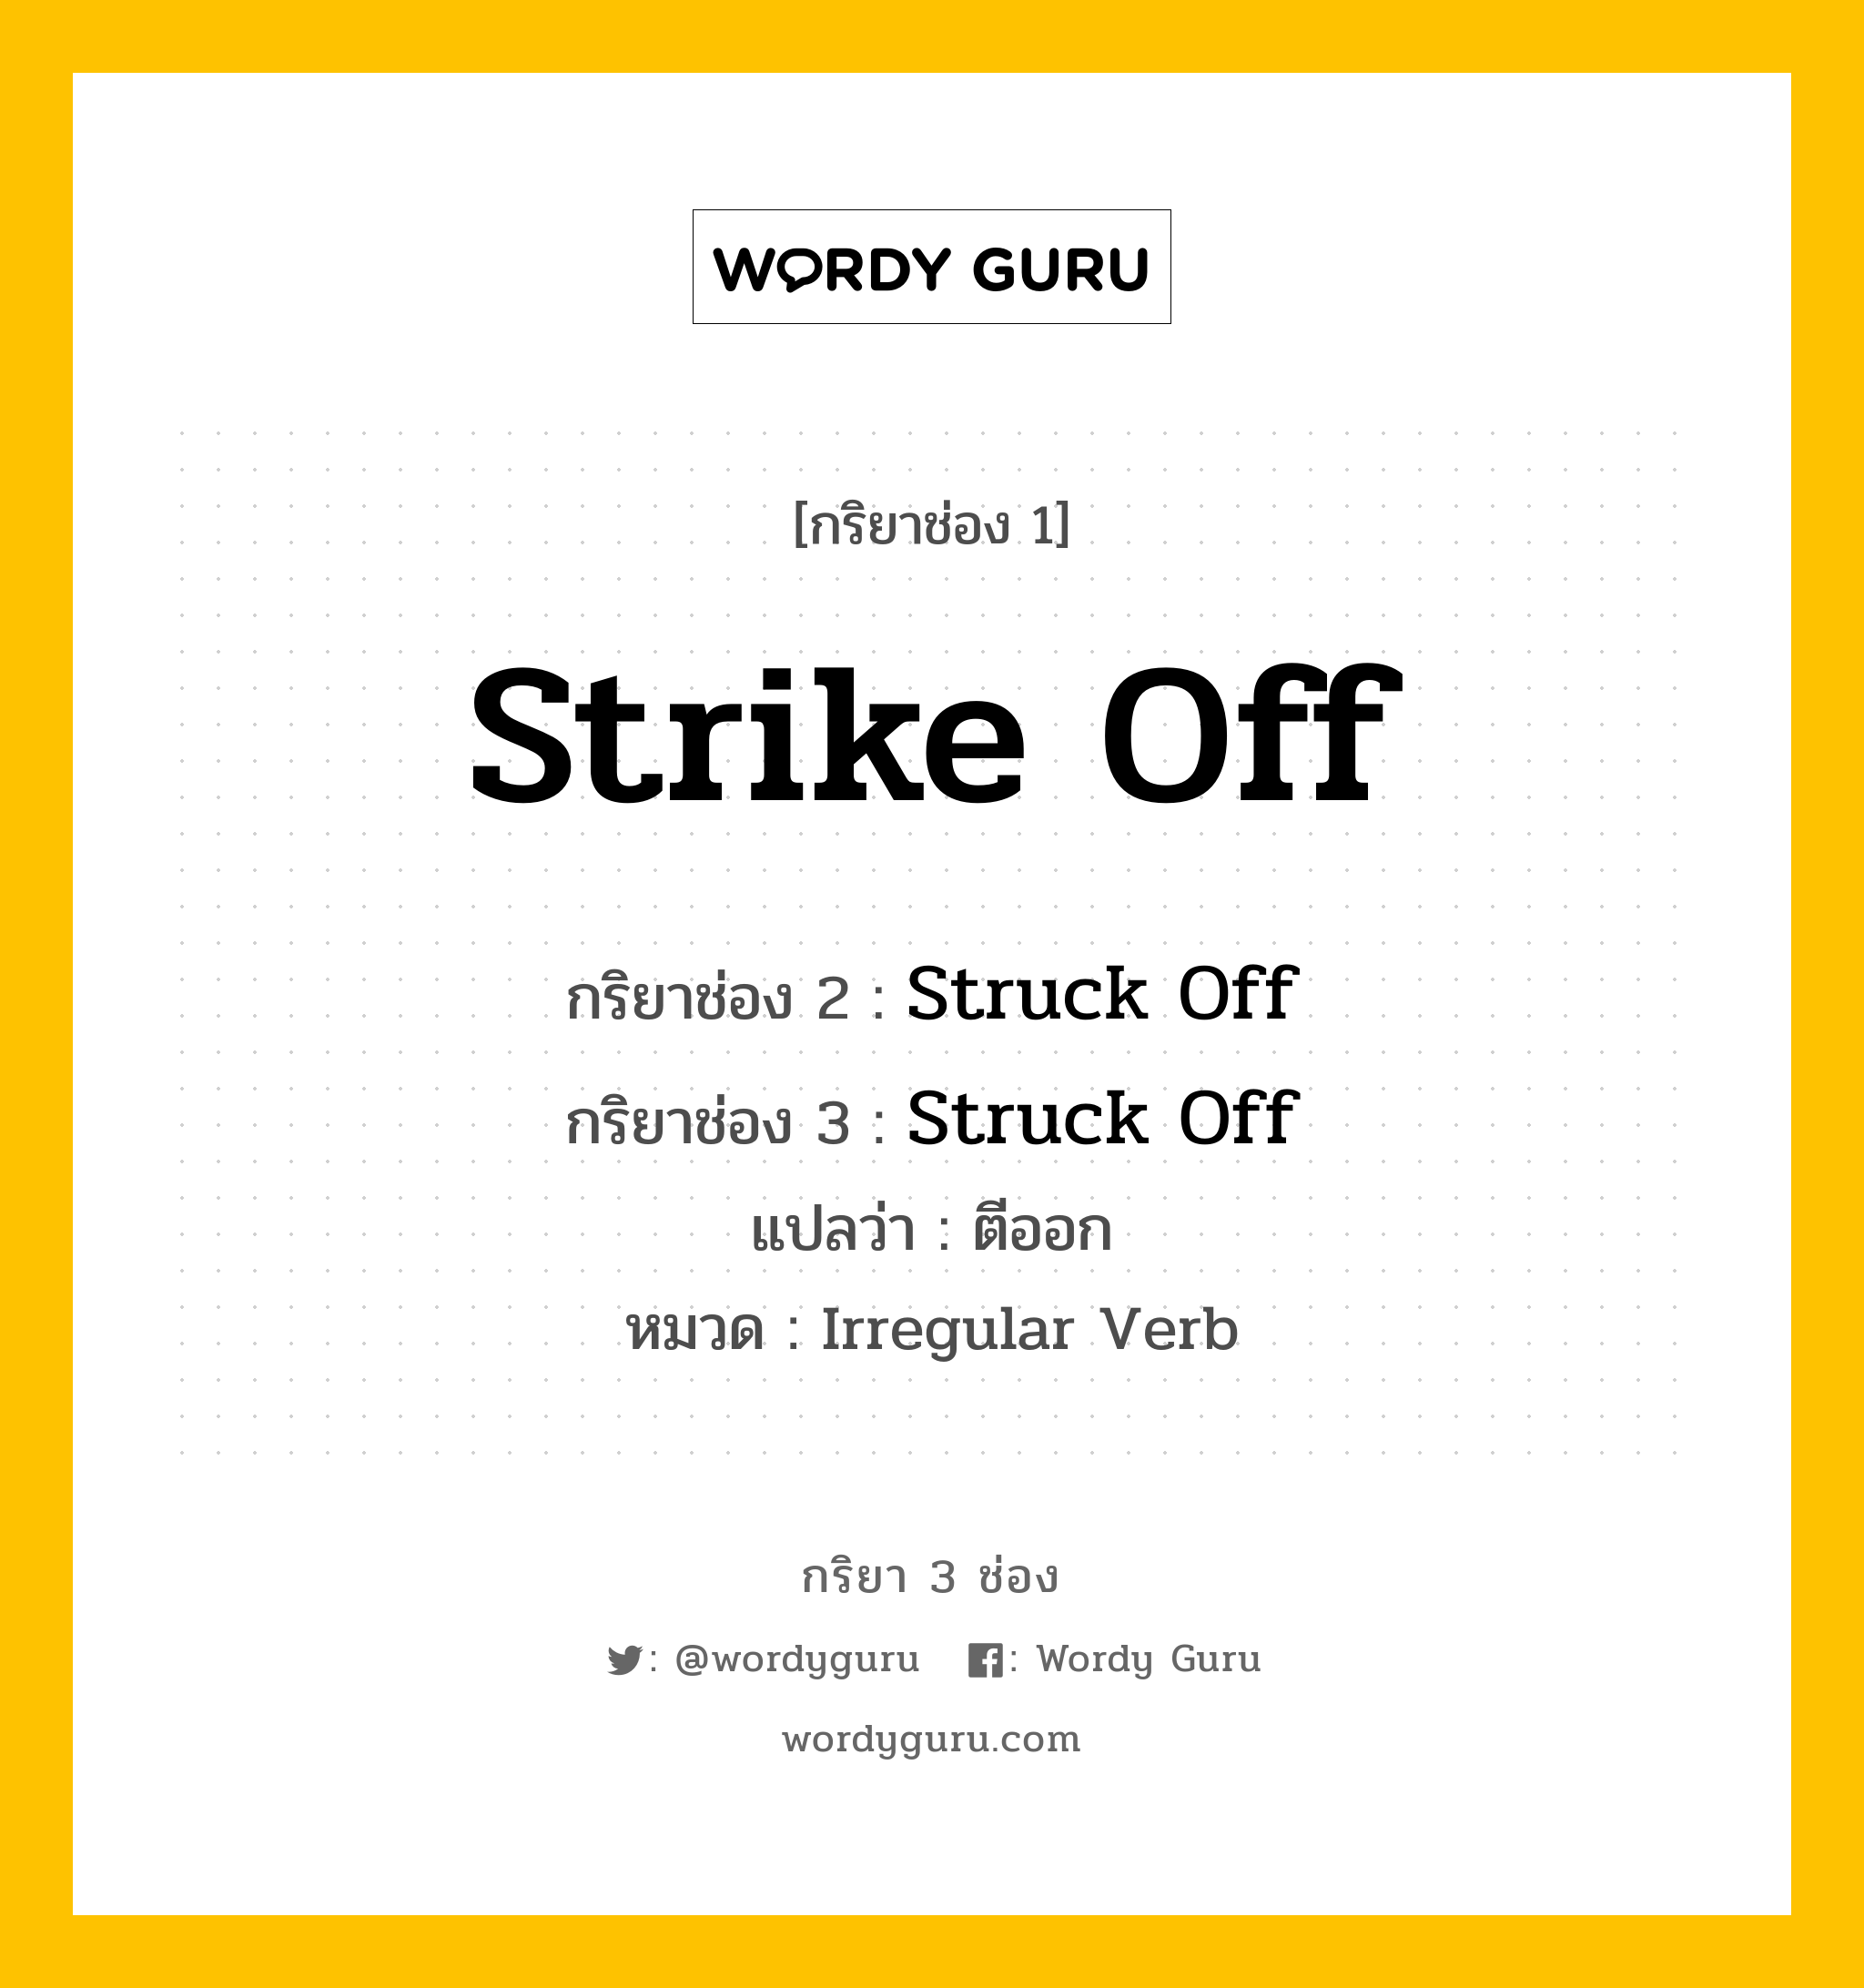 กริยา 3 ช่อง: Strike Off ช่อง 2 Strike Off ช่อง 3 คืออะไร, กริยาช่อง 1 Strike Off กริยาช่อง 2 Struck Off กริยาช่อง 3 Struck Off แปลว่า ตีออก หมวด Irregular Verb หมวด Irregular Verb